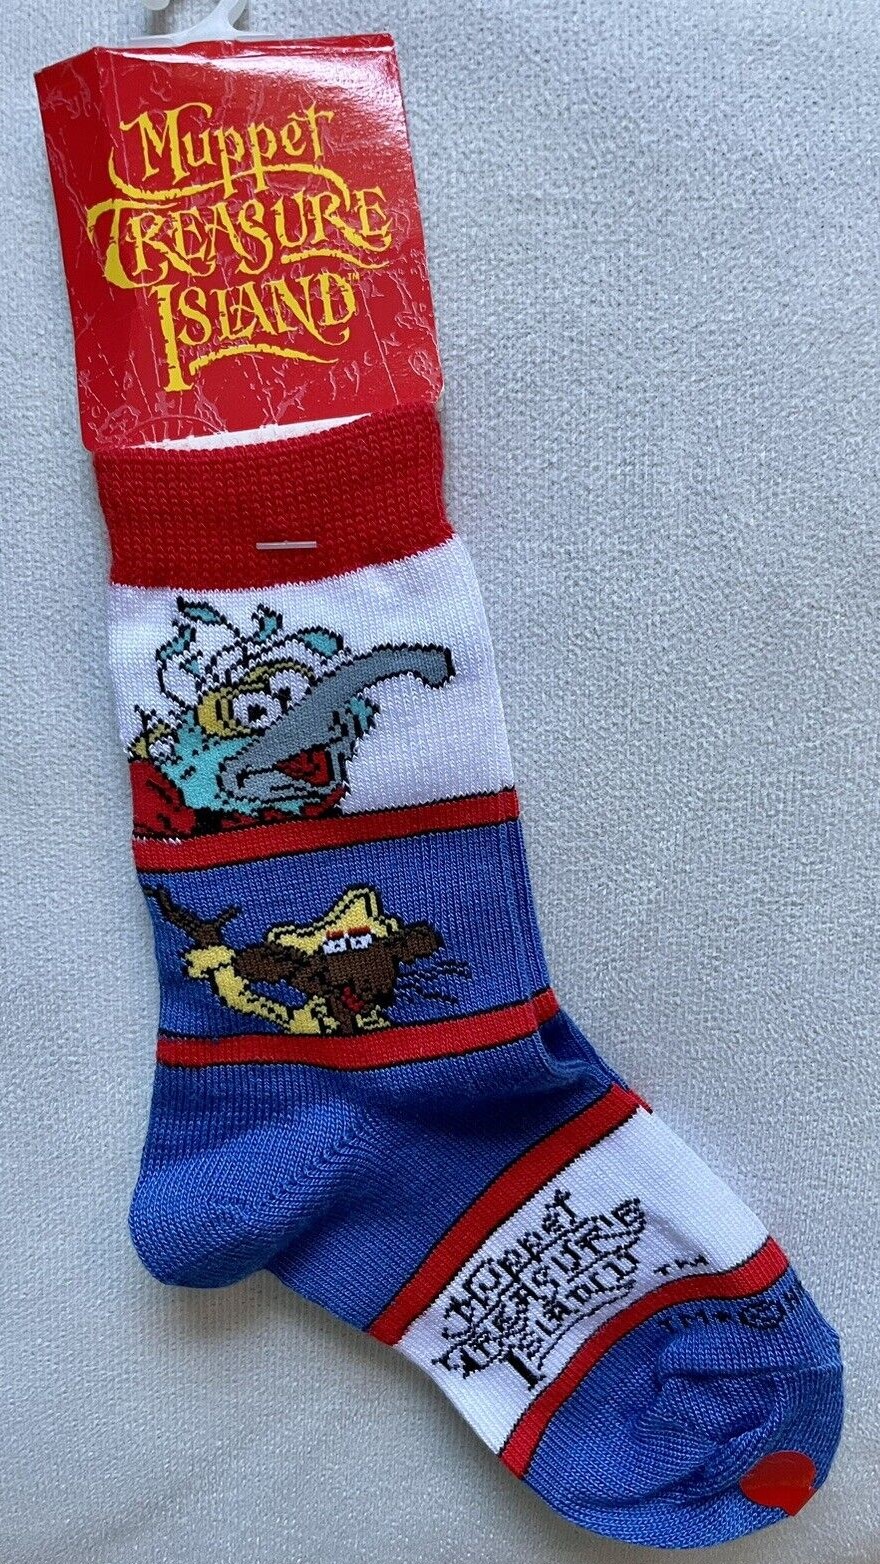 Muppet Treasure Island socks | Muppet Wiki | Fandom